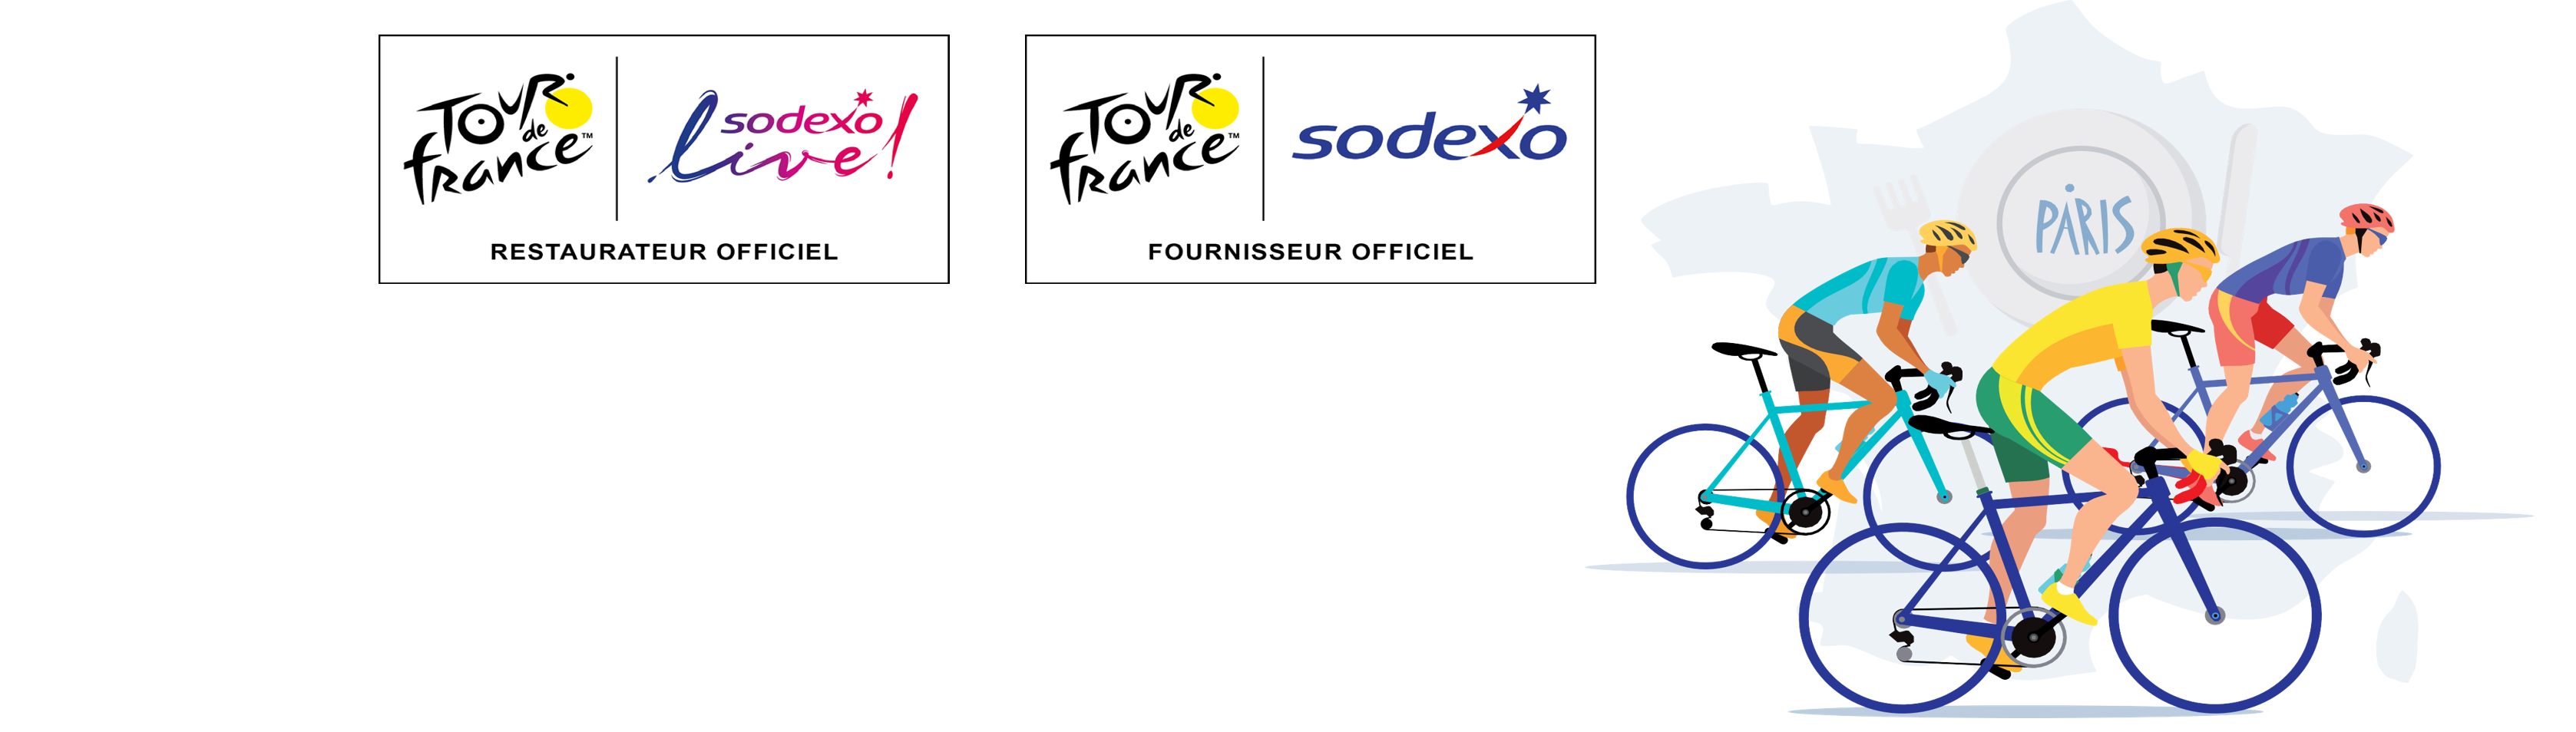 Bannière fond blanc avec une illustration de cyclistes avec la carte de France en fond et les logos Sodexo, Sodexo Live ! et Tour de France